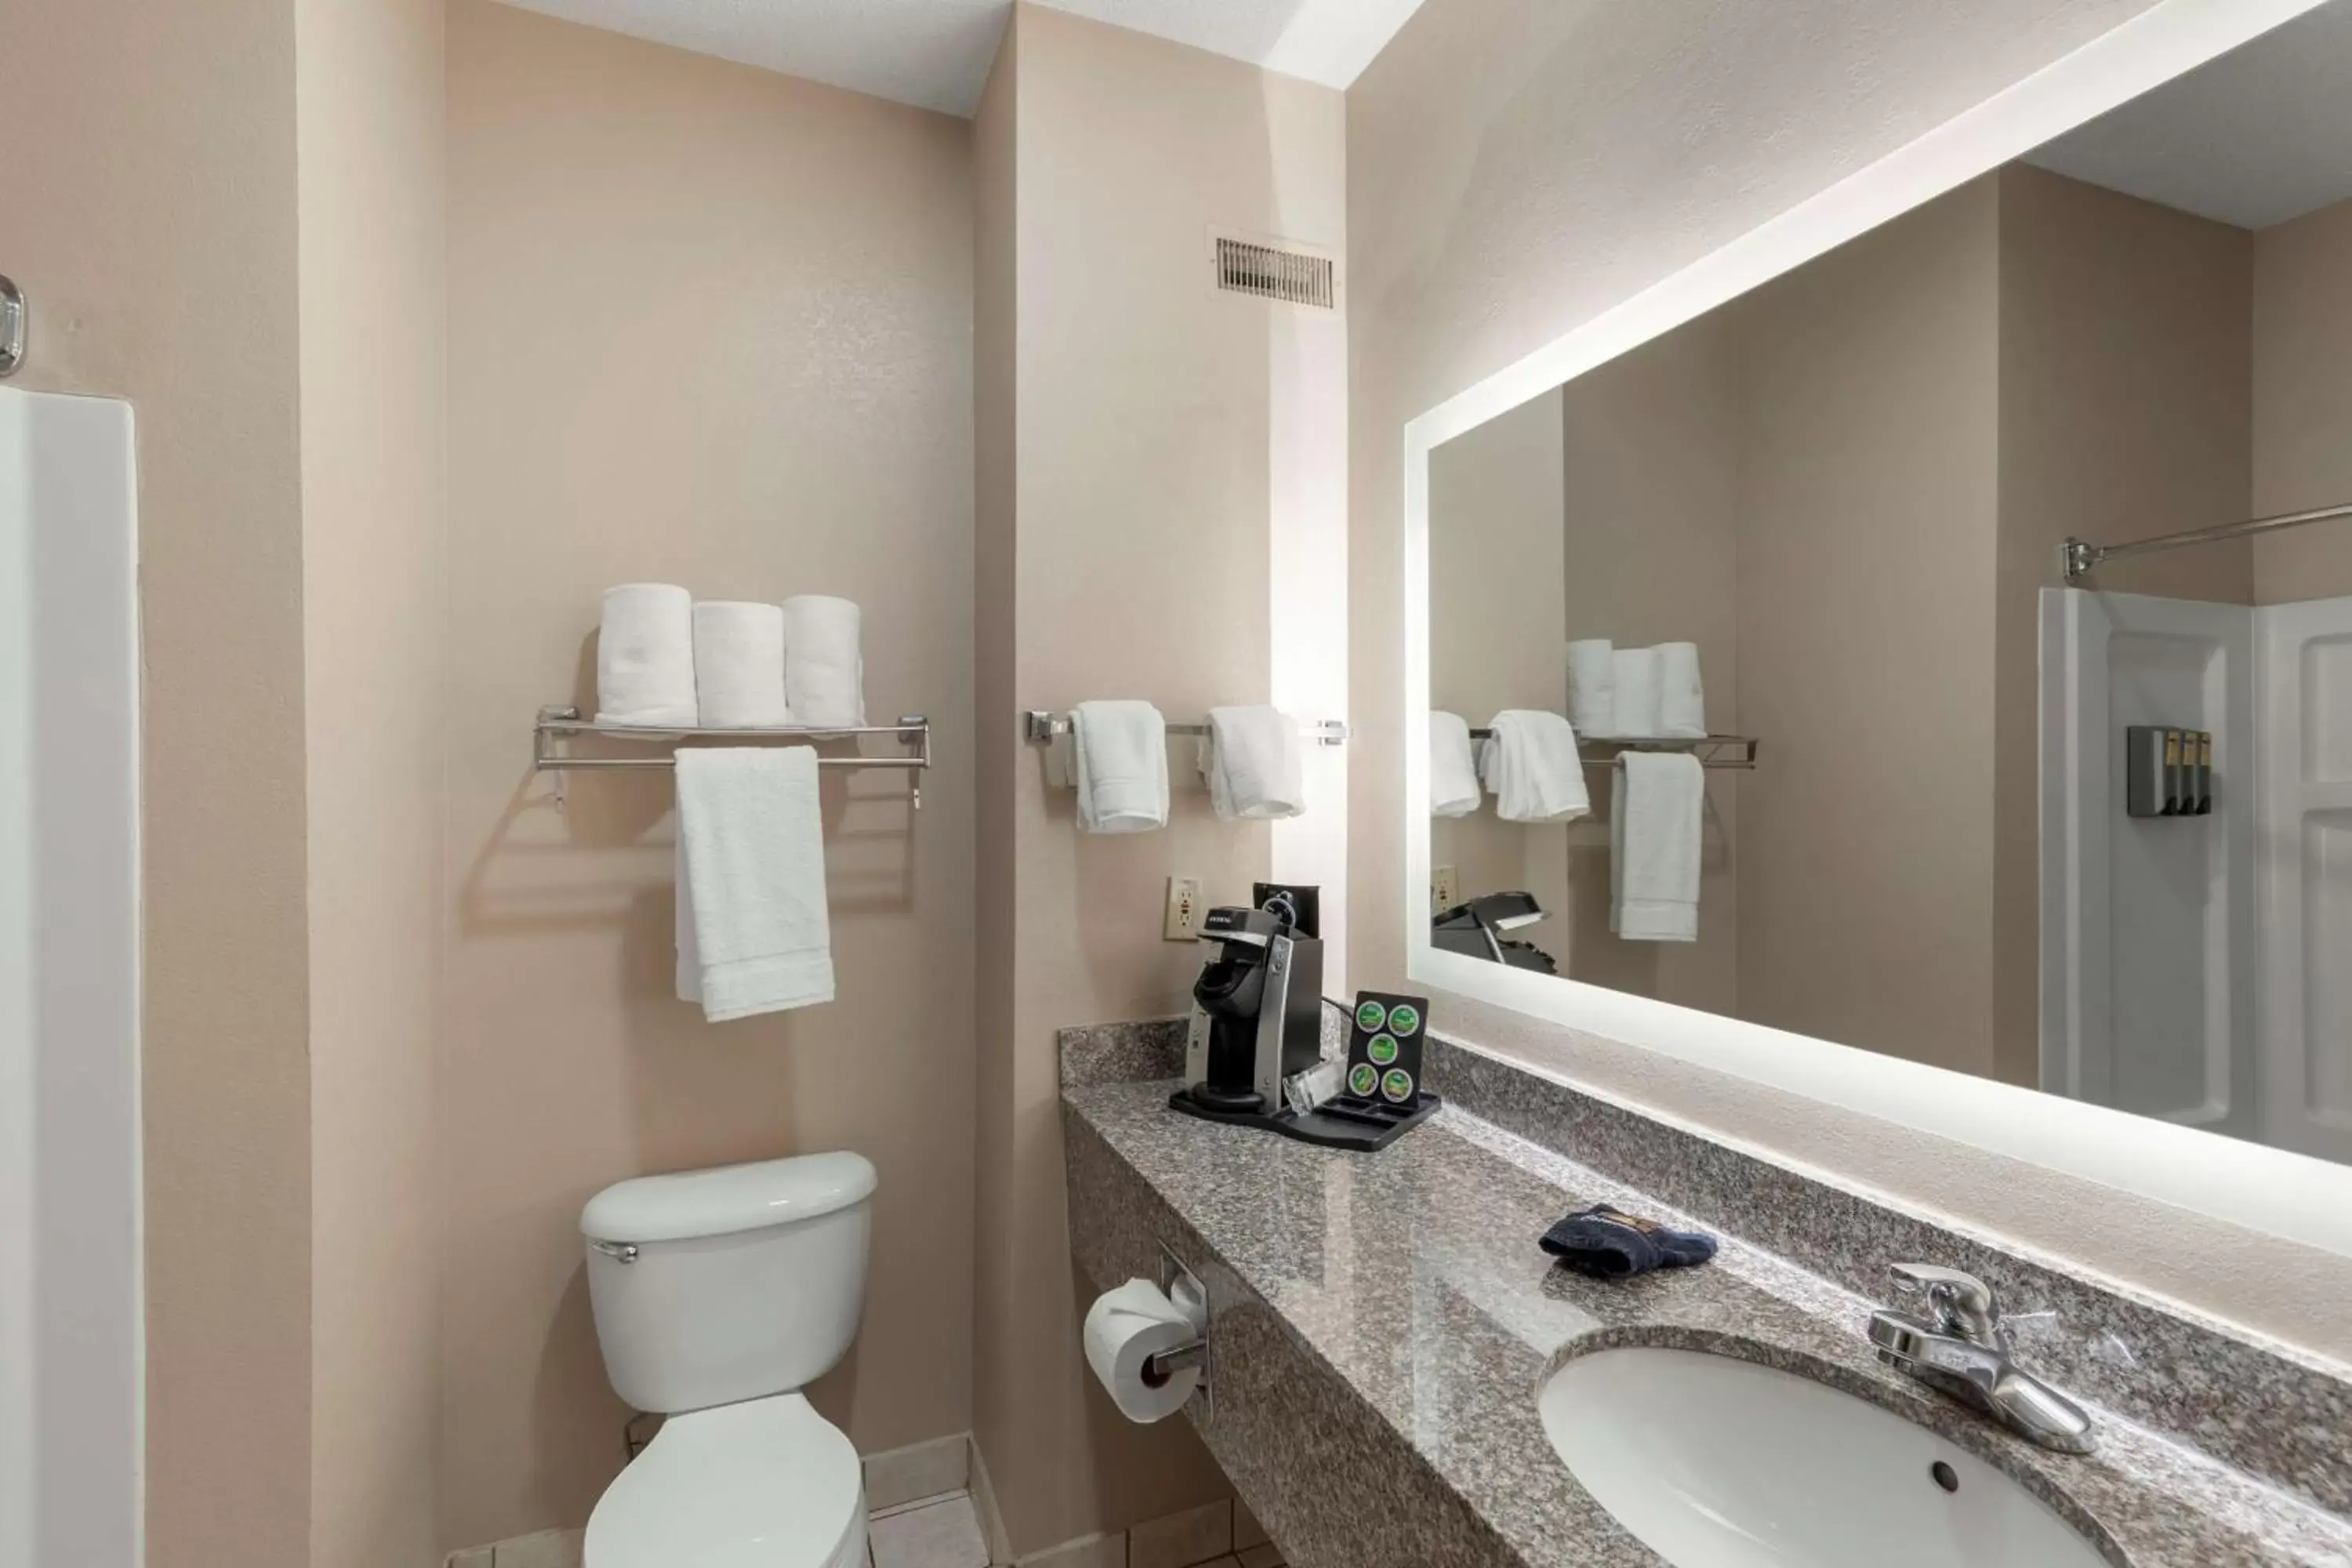 Bedroom, Bathroom in Best Western Plus Russellville Hotel & Suites